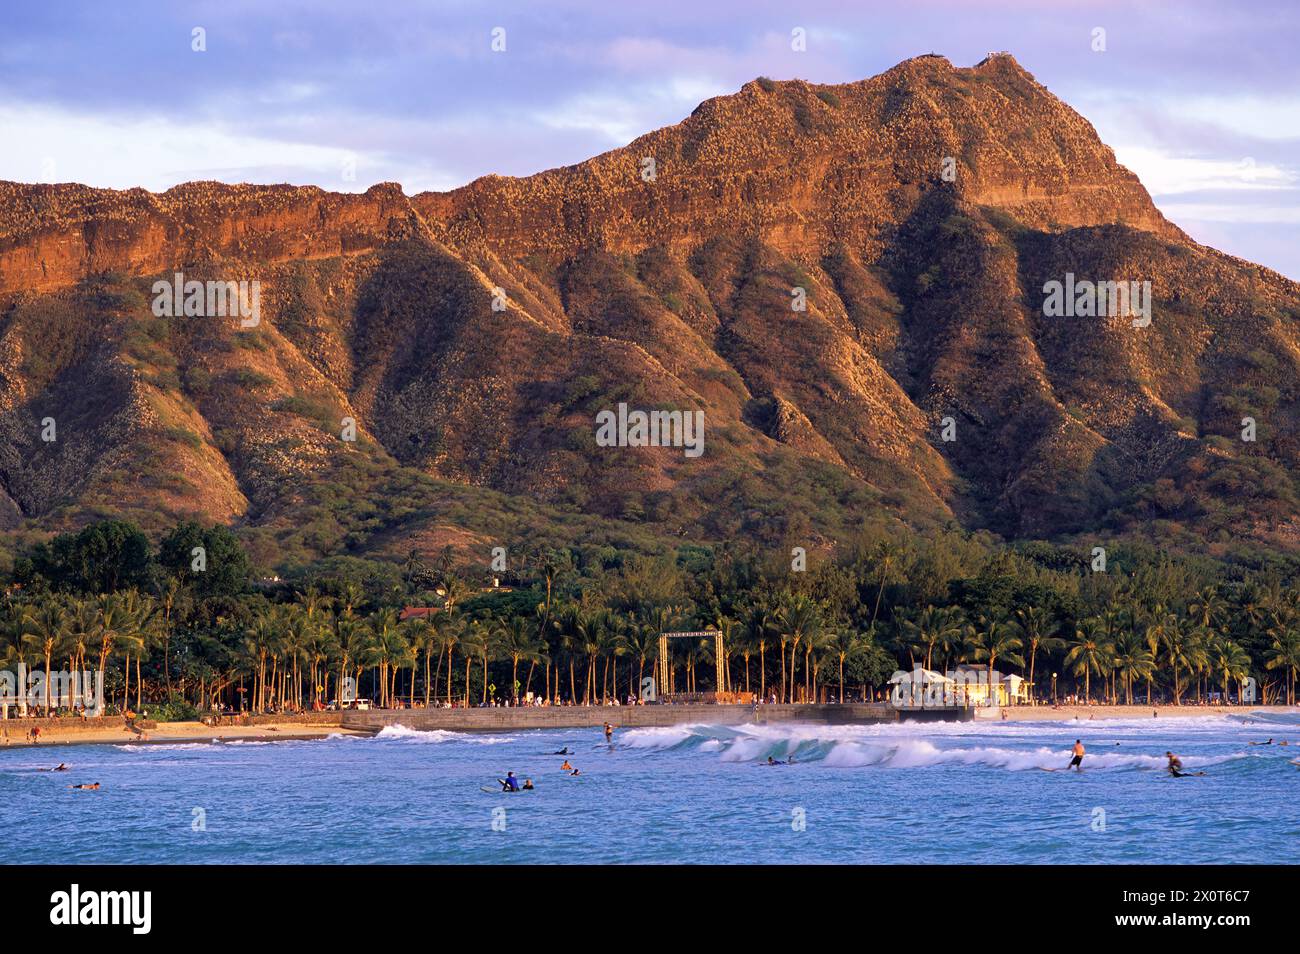 Oahu, Hawaï, États-Unis - Waikiki Swimmers, Surfers at Sunset, Honolulu. Tête de diamant en arrière-plan. Banque D'Images